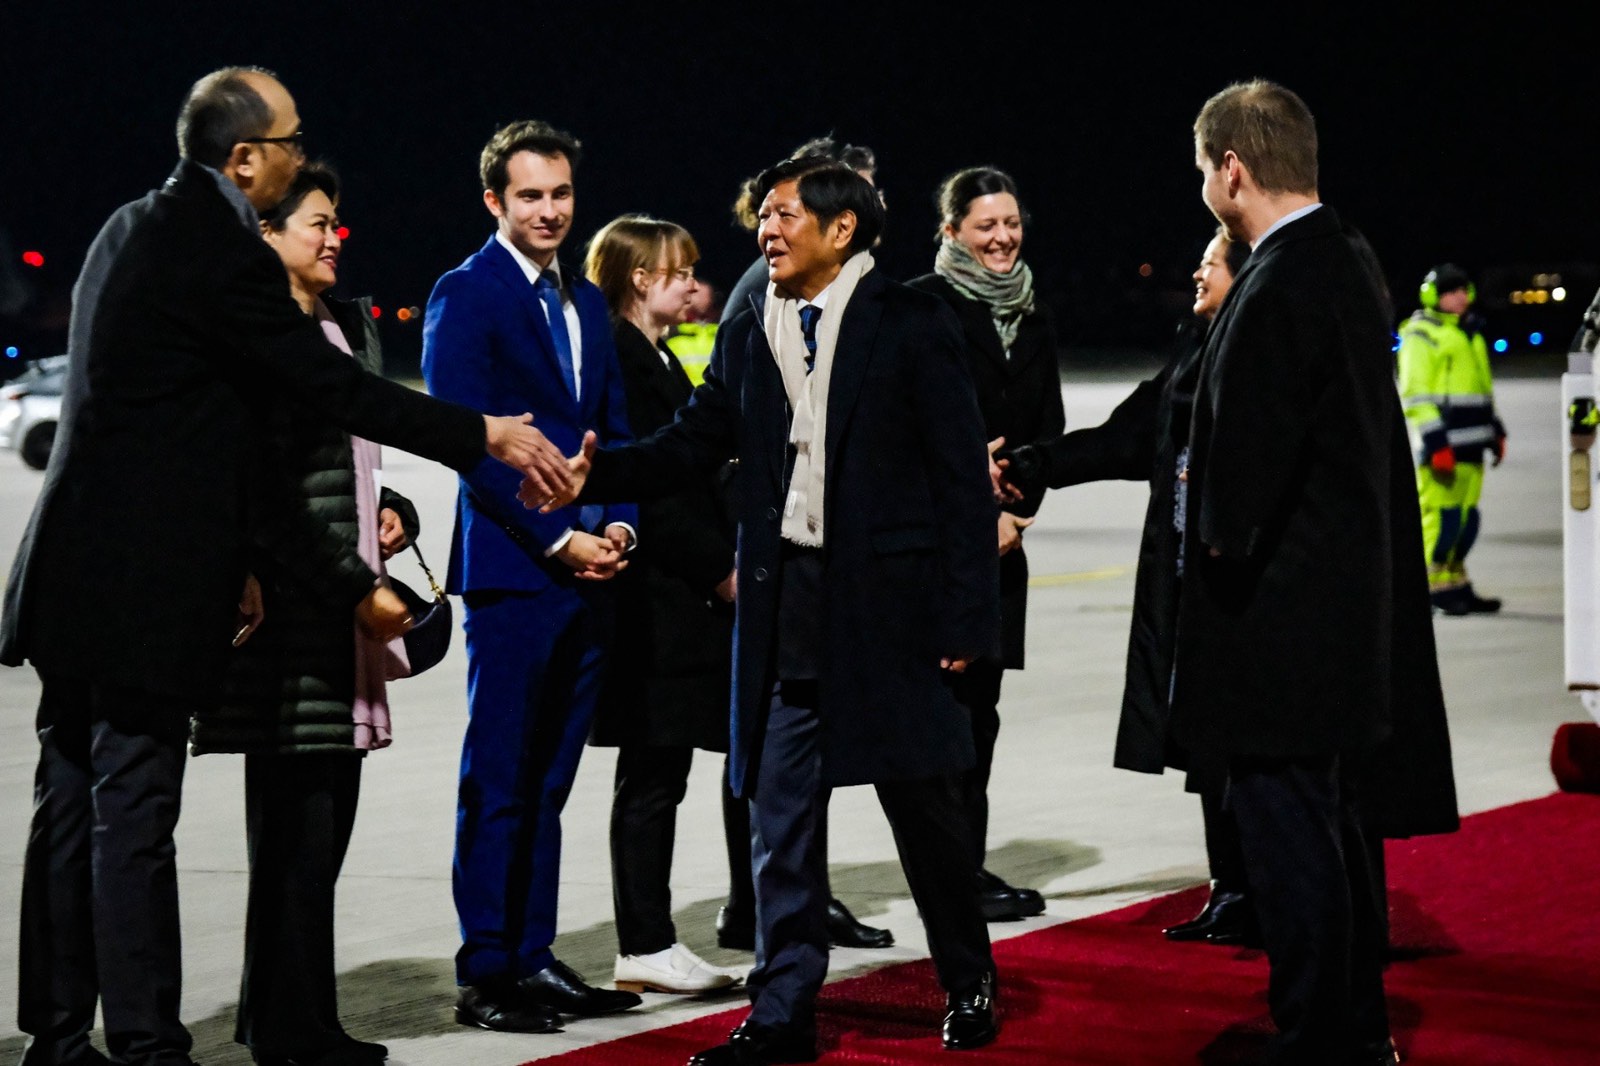 Marcos in Berlin for working visit, boost PH-German ties